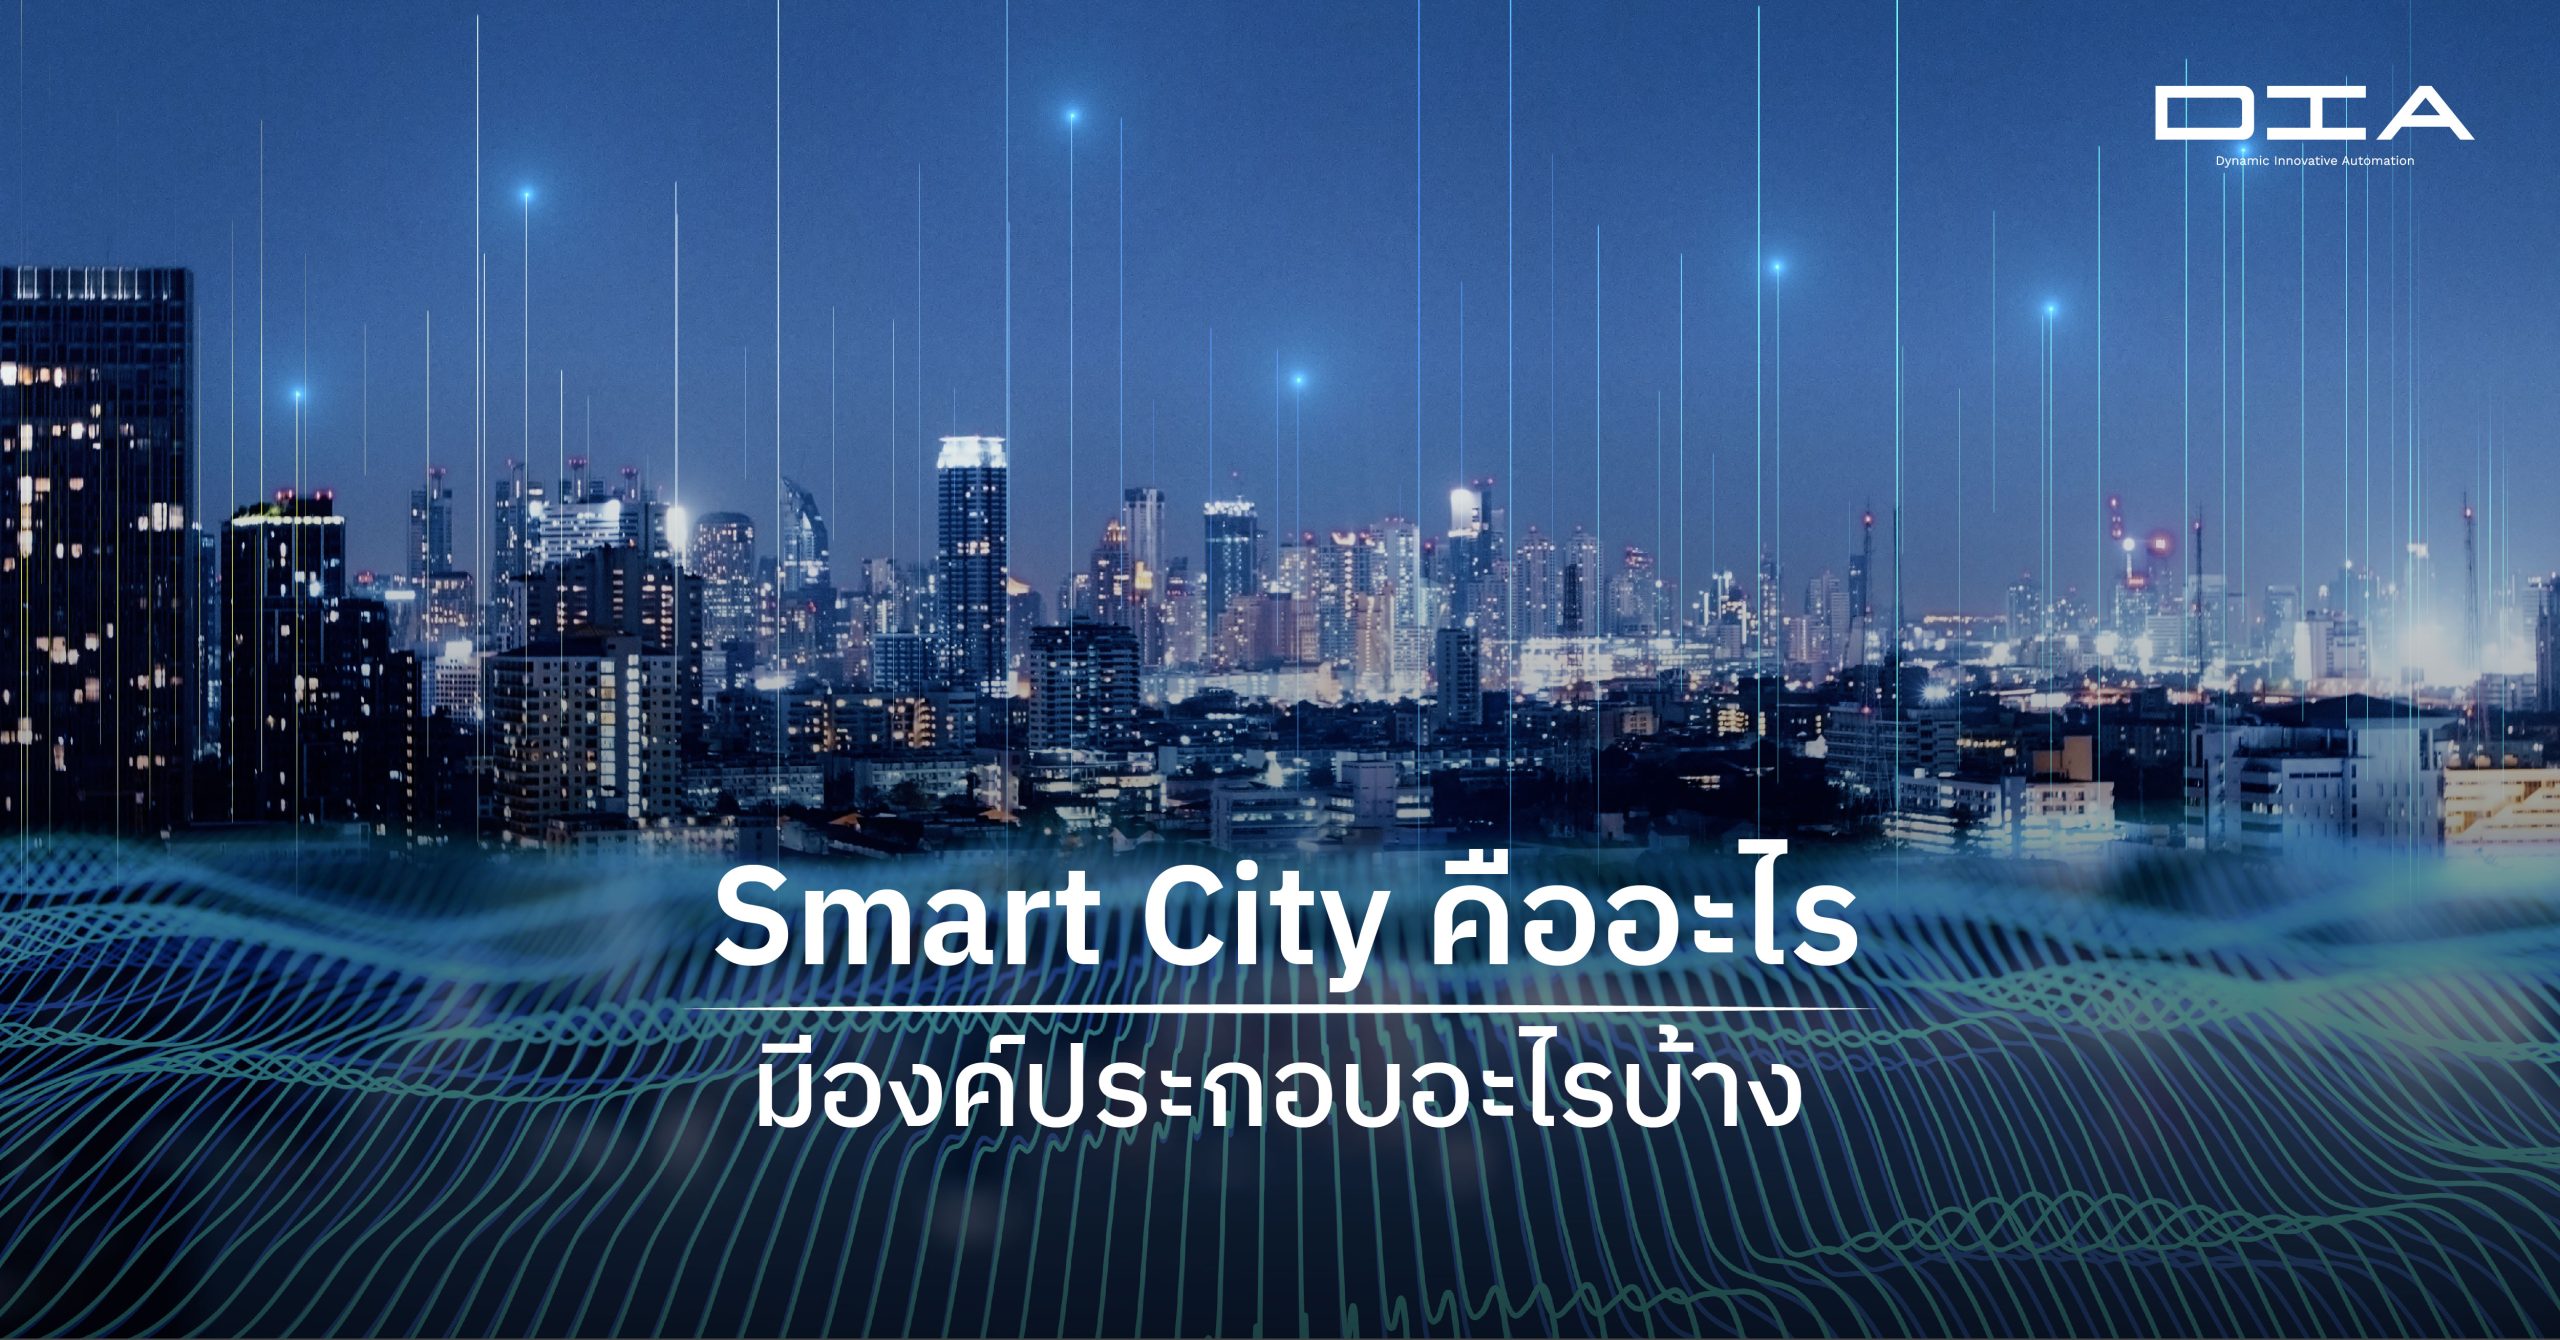 Smart City คืออะไร มีองค์ประกอบอะไรบ้าง